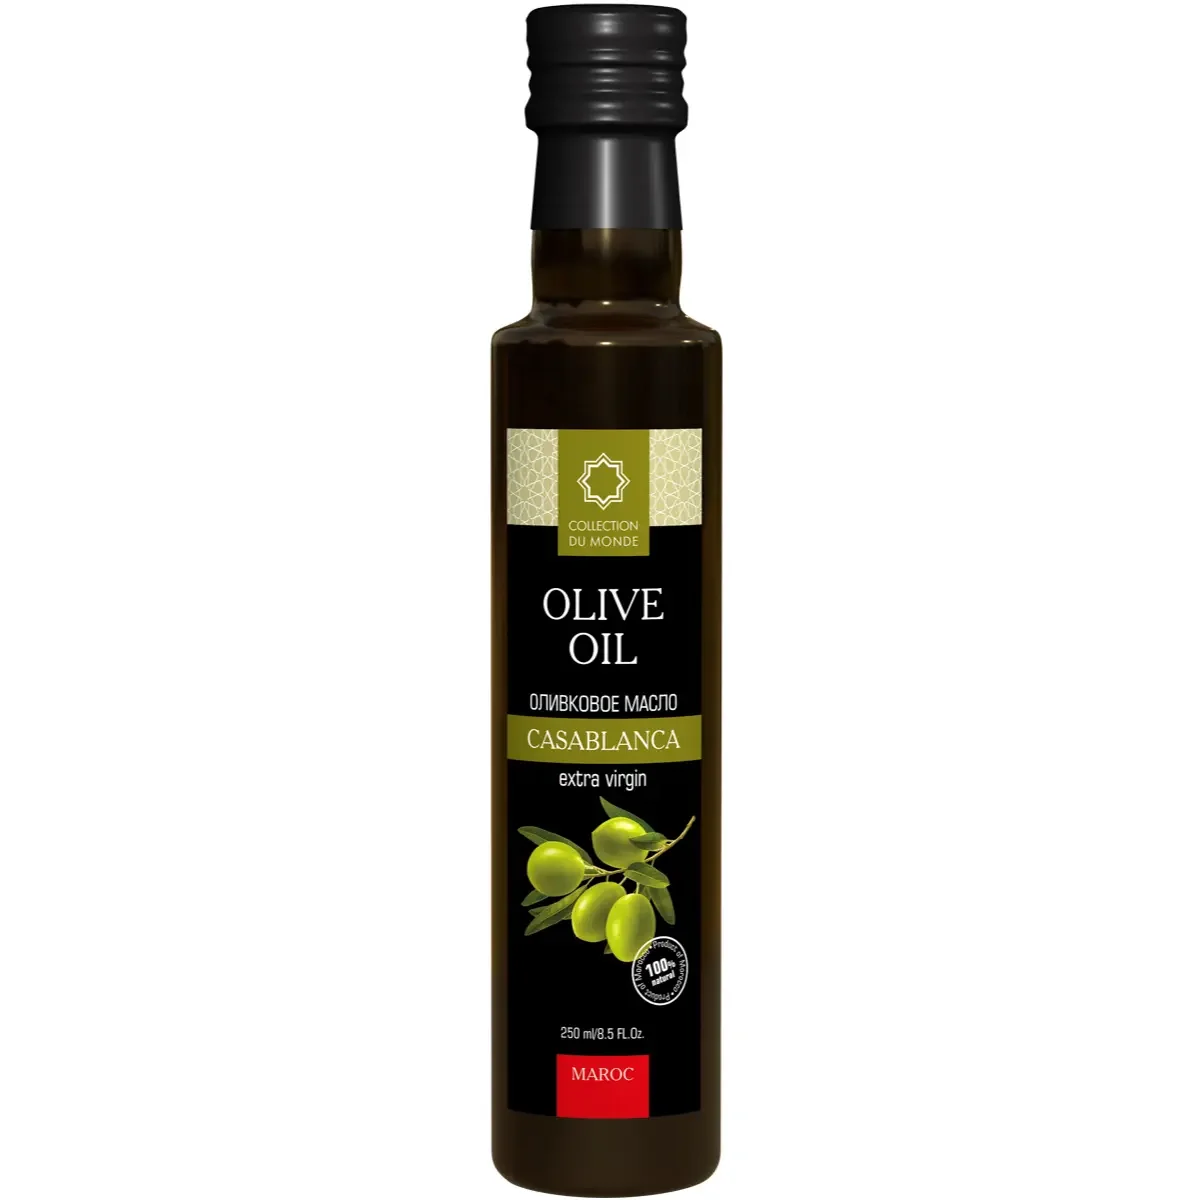 Код оливкового масла